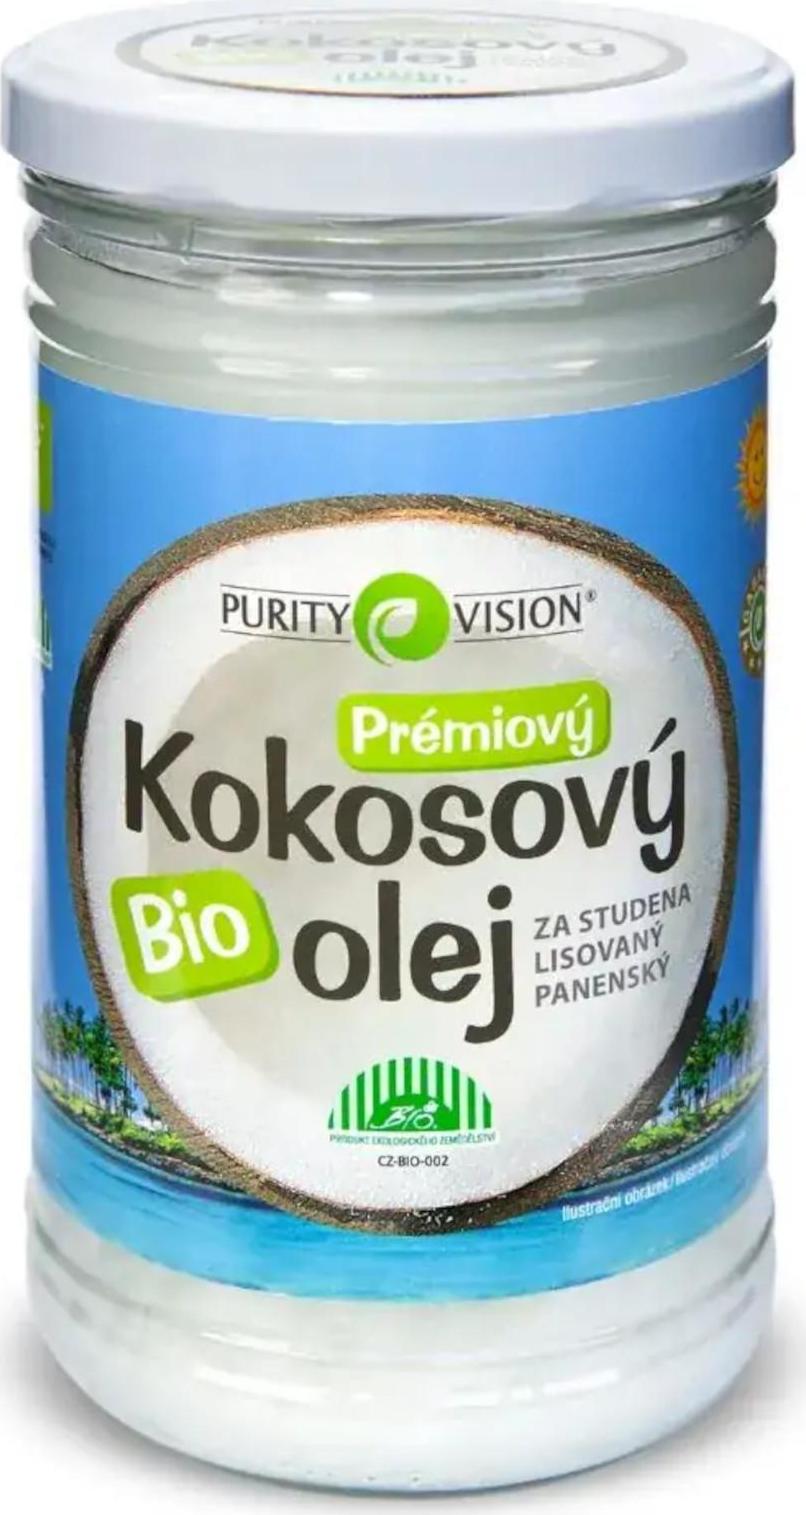 Purity Vision Kokosový olej panenský ve skle 900 ml